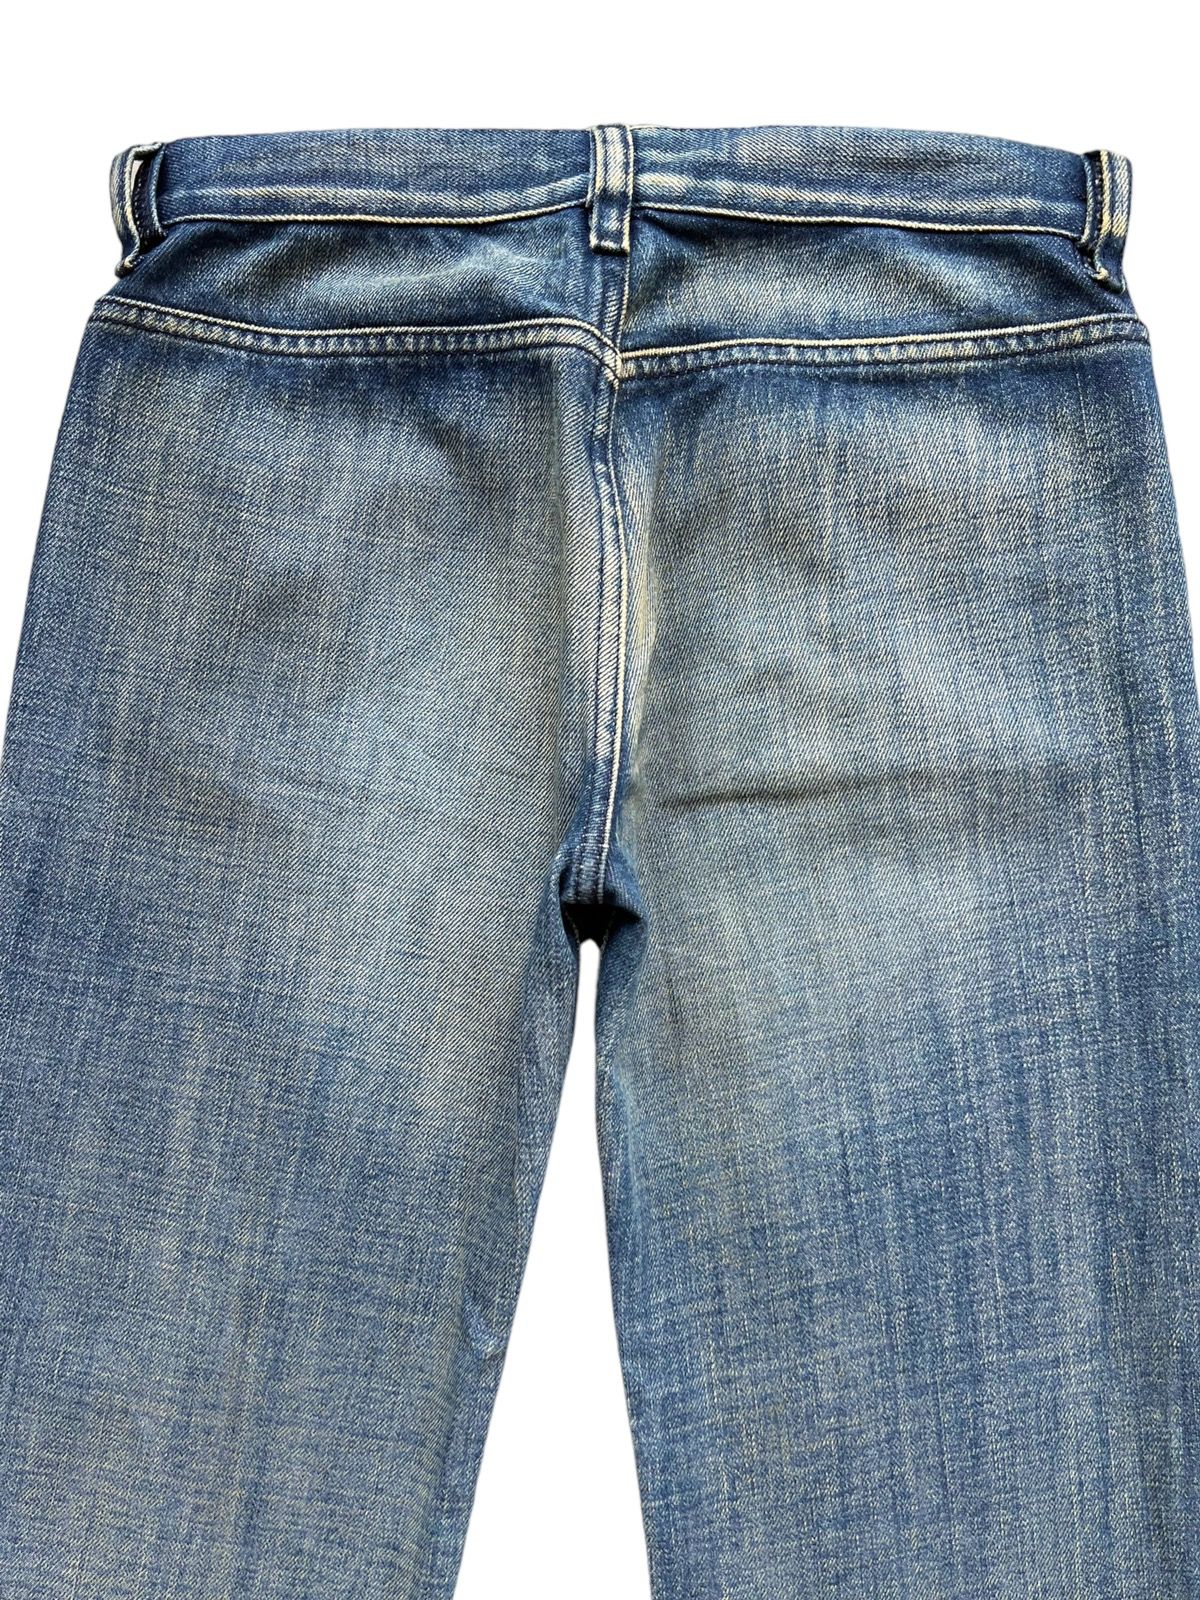 💥💥🔥 Vintage Diesel Rusty Wideleg Flare Denim Jeans 28x32 - 6